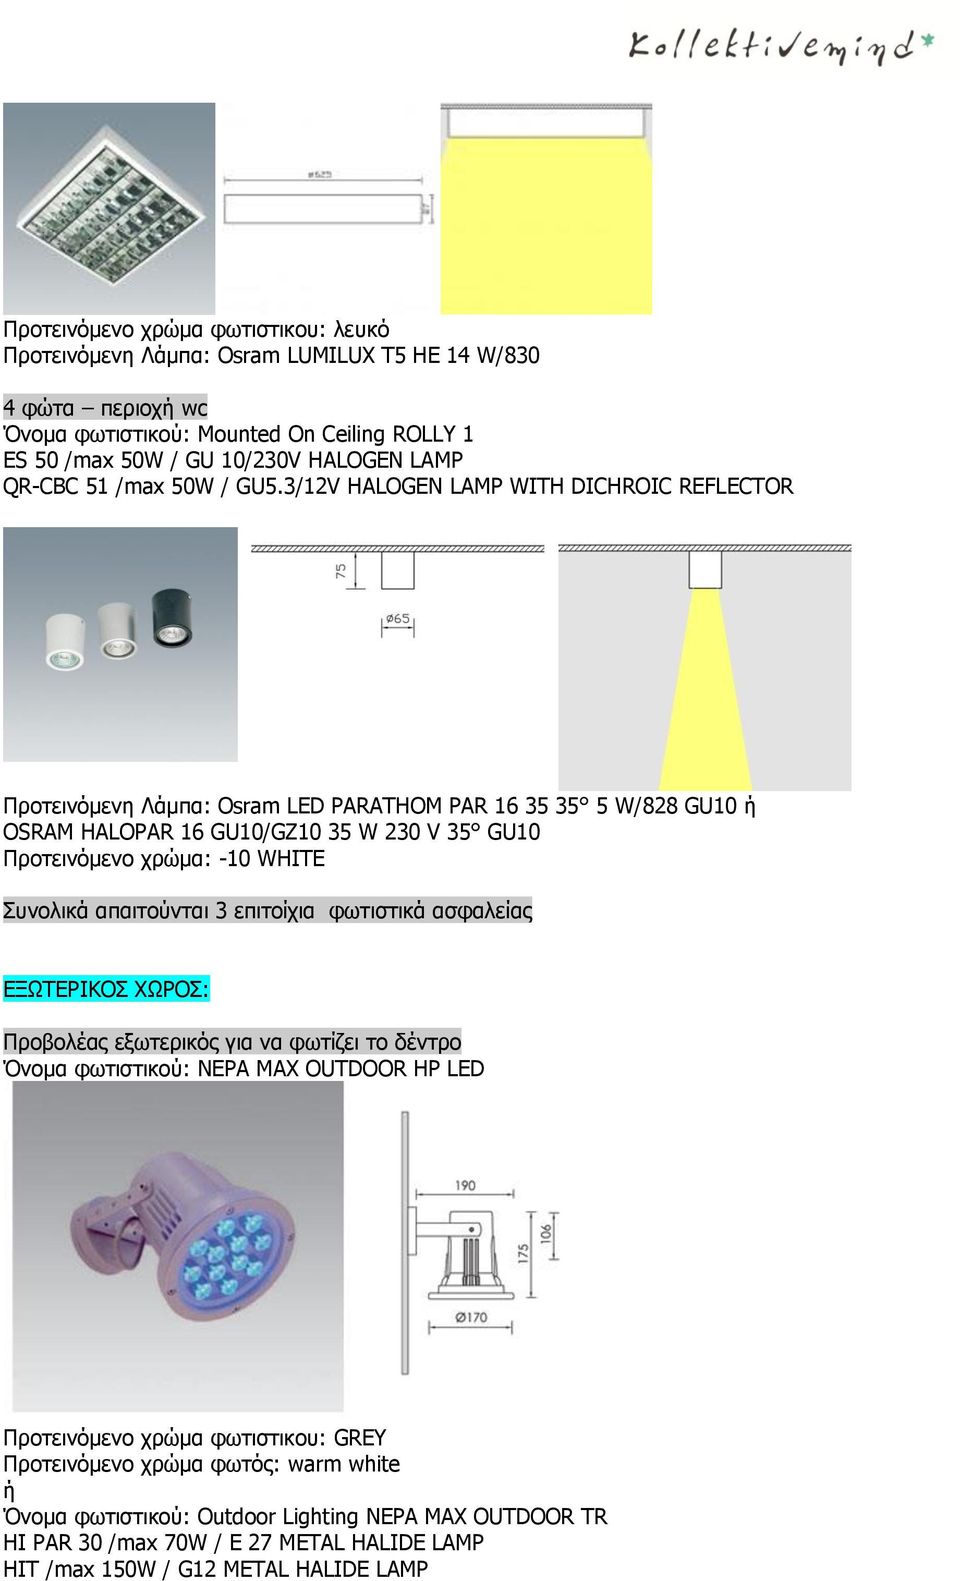 3/12V HALOGEN LAMP WITH DICHROIC REFLECTOR Προτεινόμενη Λάμπα: Osram LED PARATHOM PAR 16 35 35 5 W/828 GU10 OSRAM HALOPAR 16 GU10/GZ10 35 W 230 V 35 GU10 Συνολικά απαιτούνται 3